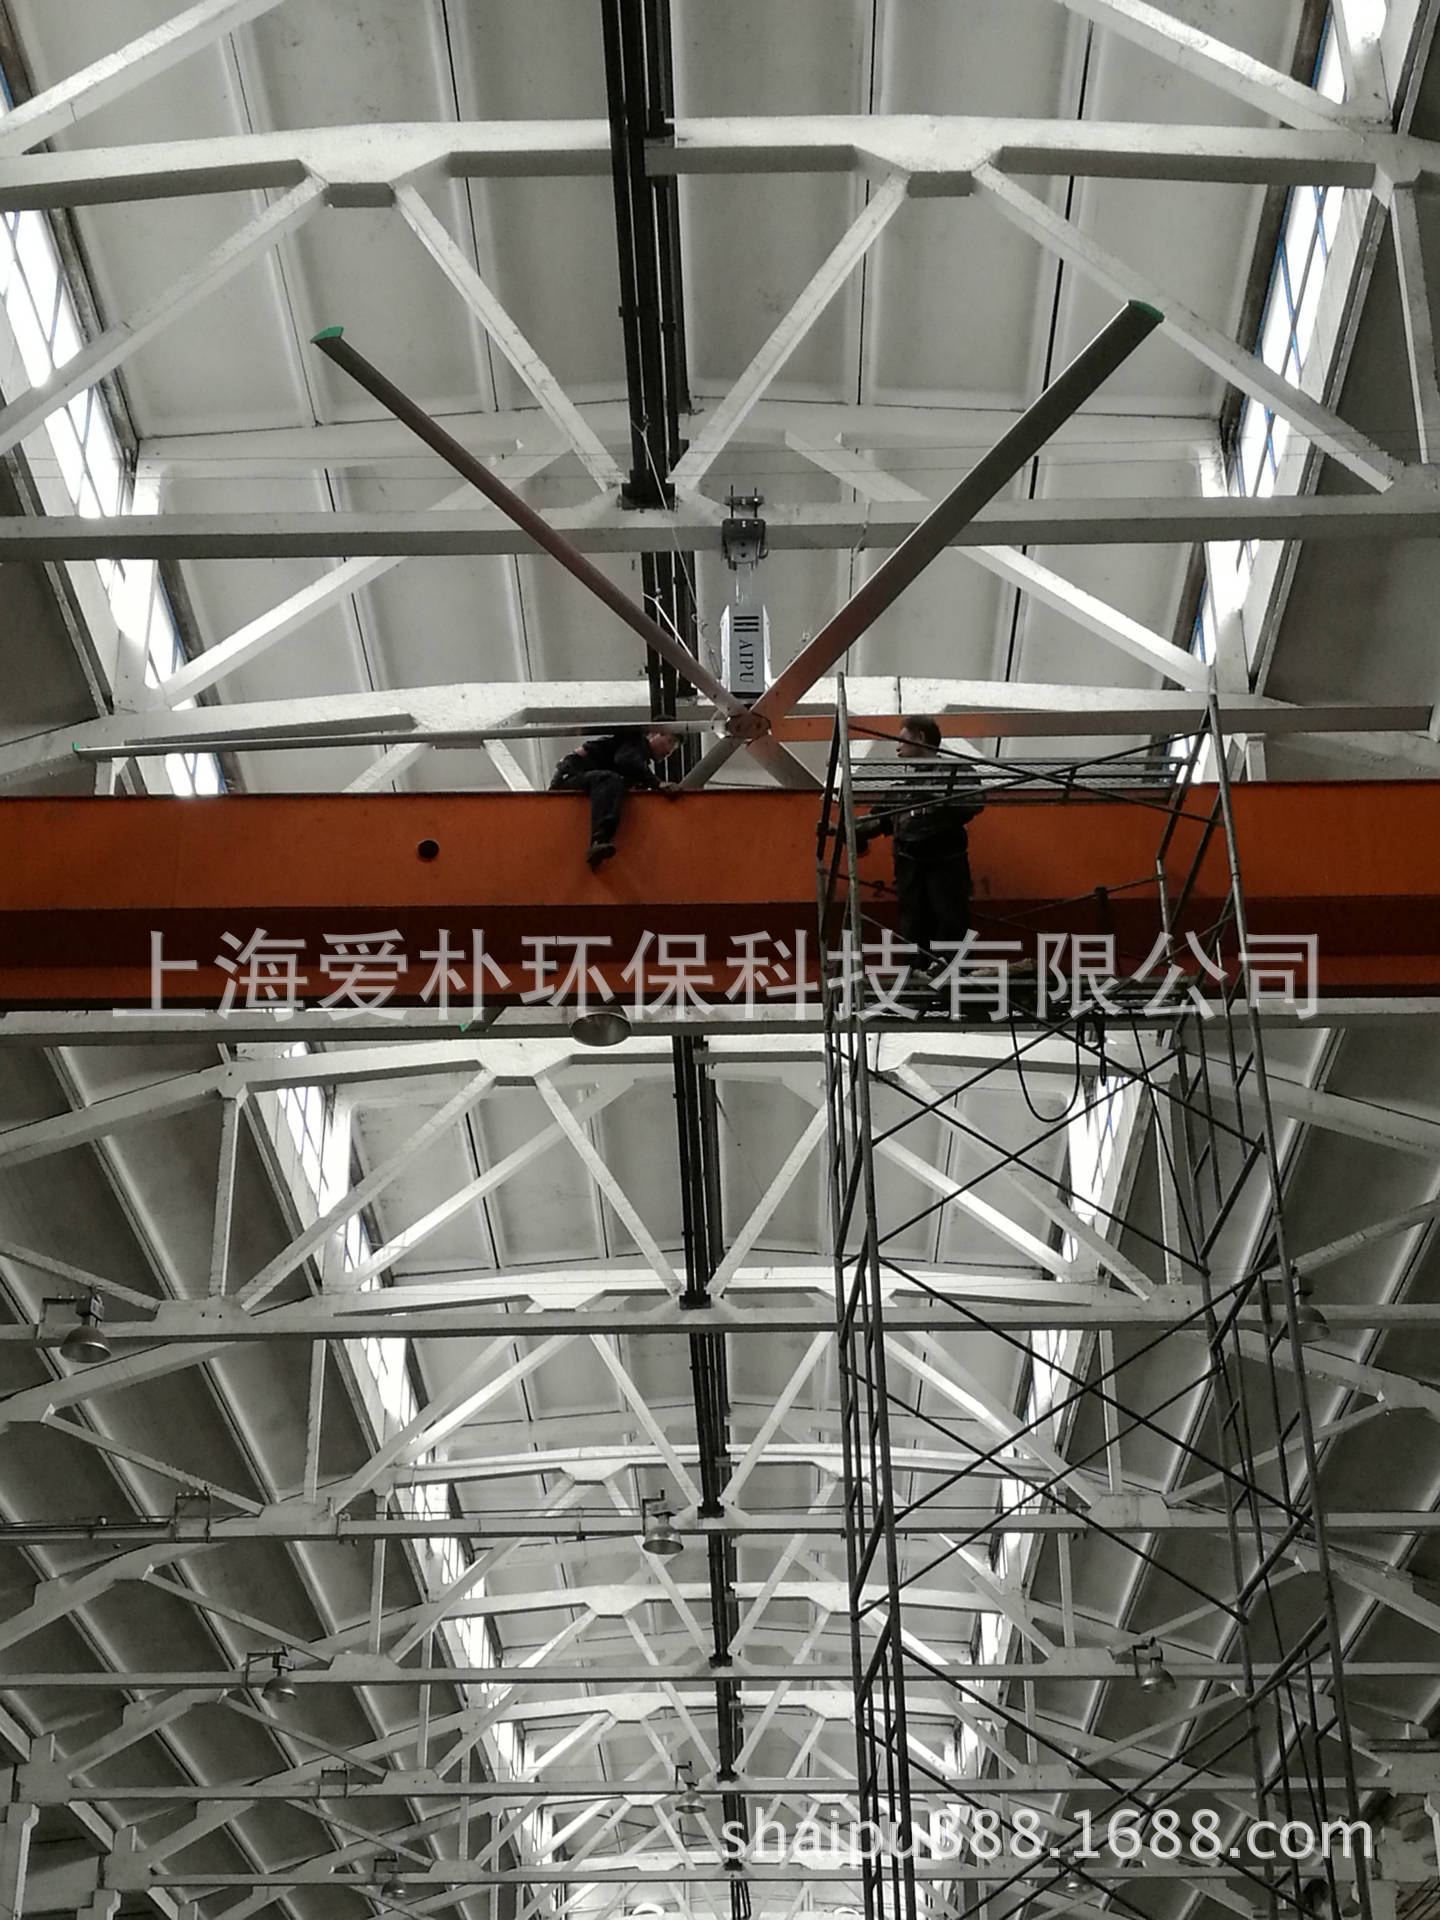 北京工業風扇 昆山大型吊扇 蘇州工業降溫吊扇 上海吊扇廠家